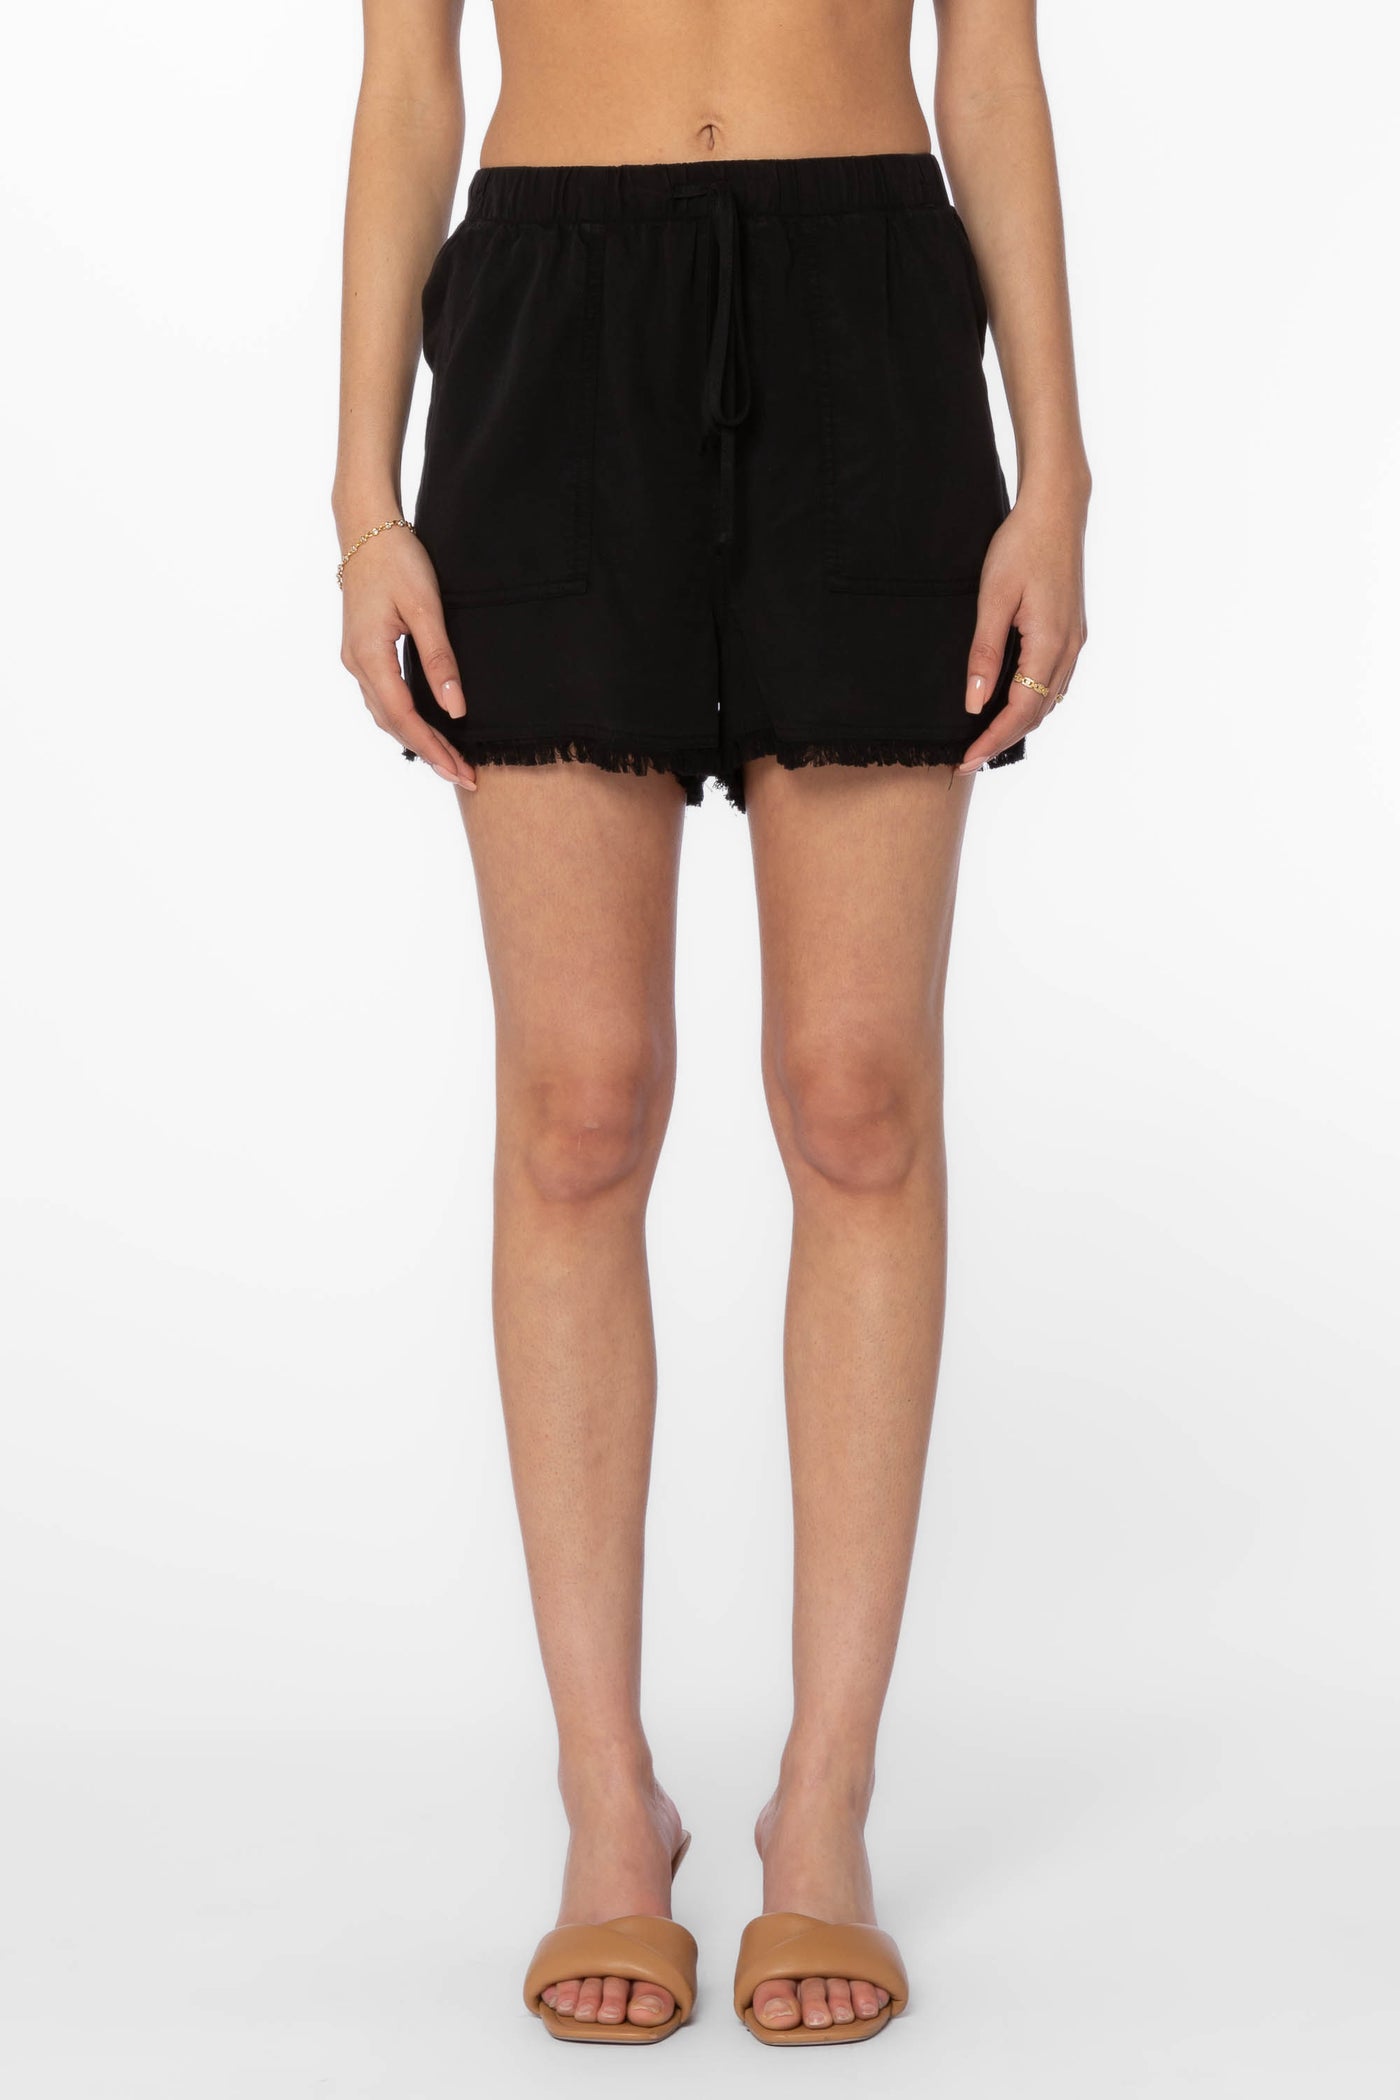 Simone Black Shorts - Shorts - Velvet Heart Clothing